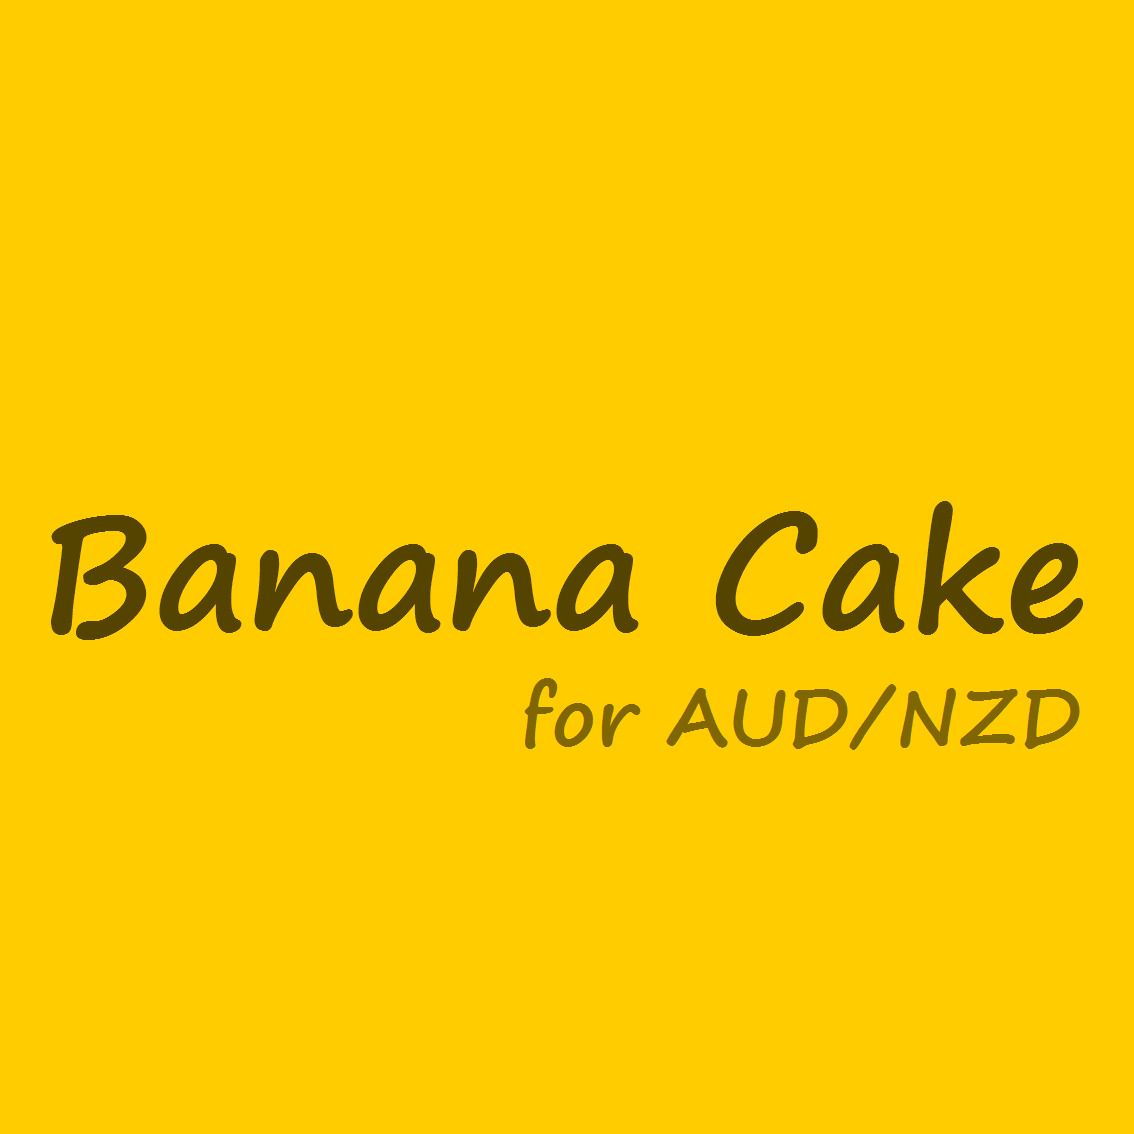 Banana Cake AUDNZD ซื้อขายอัตโนมัติ